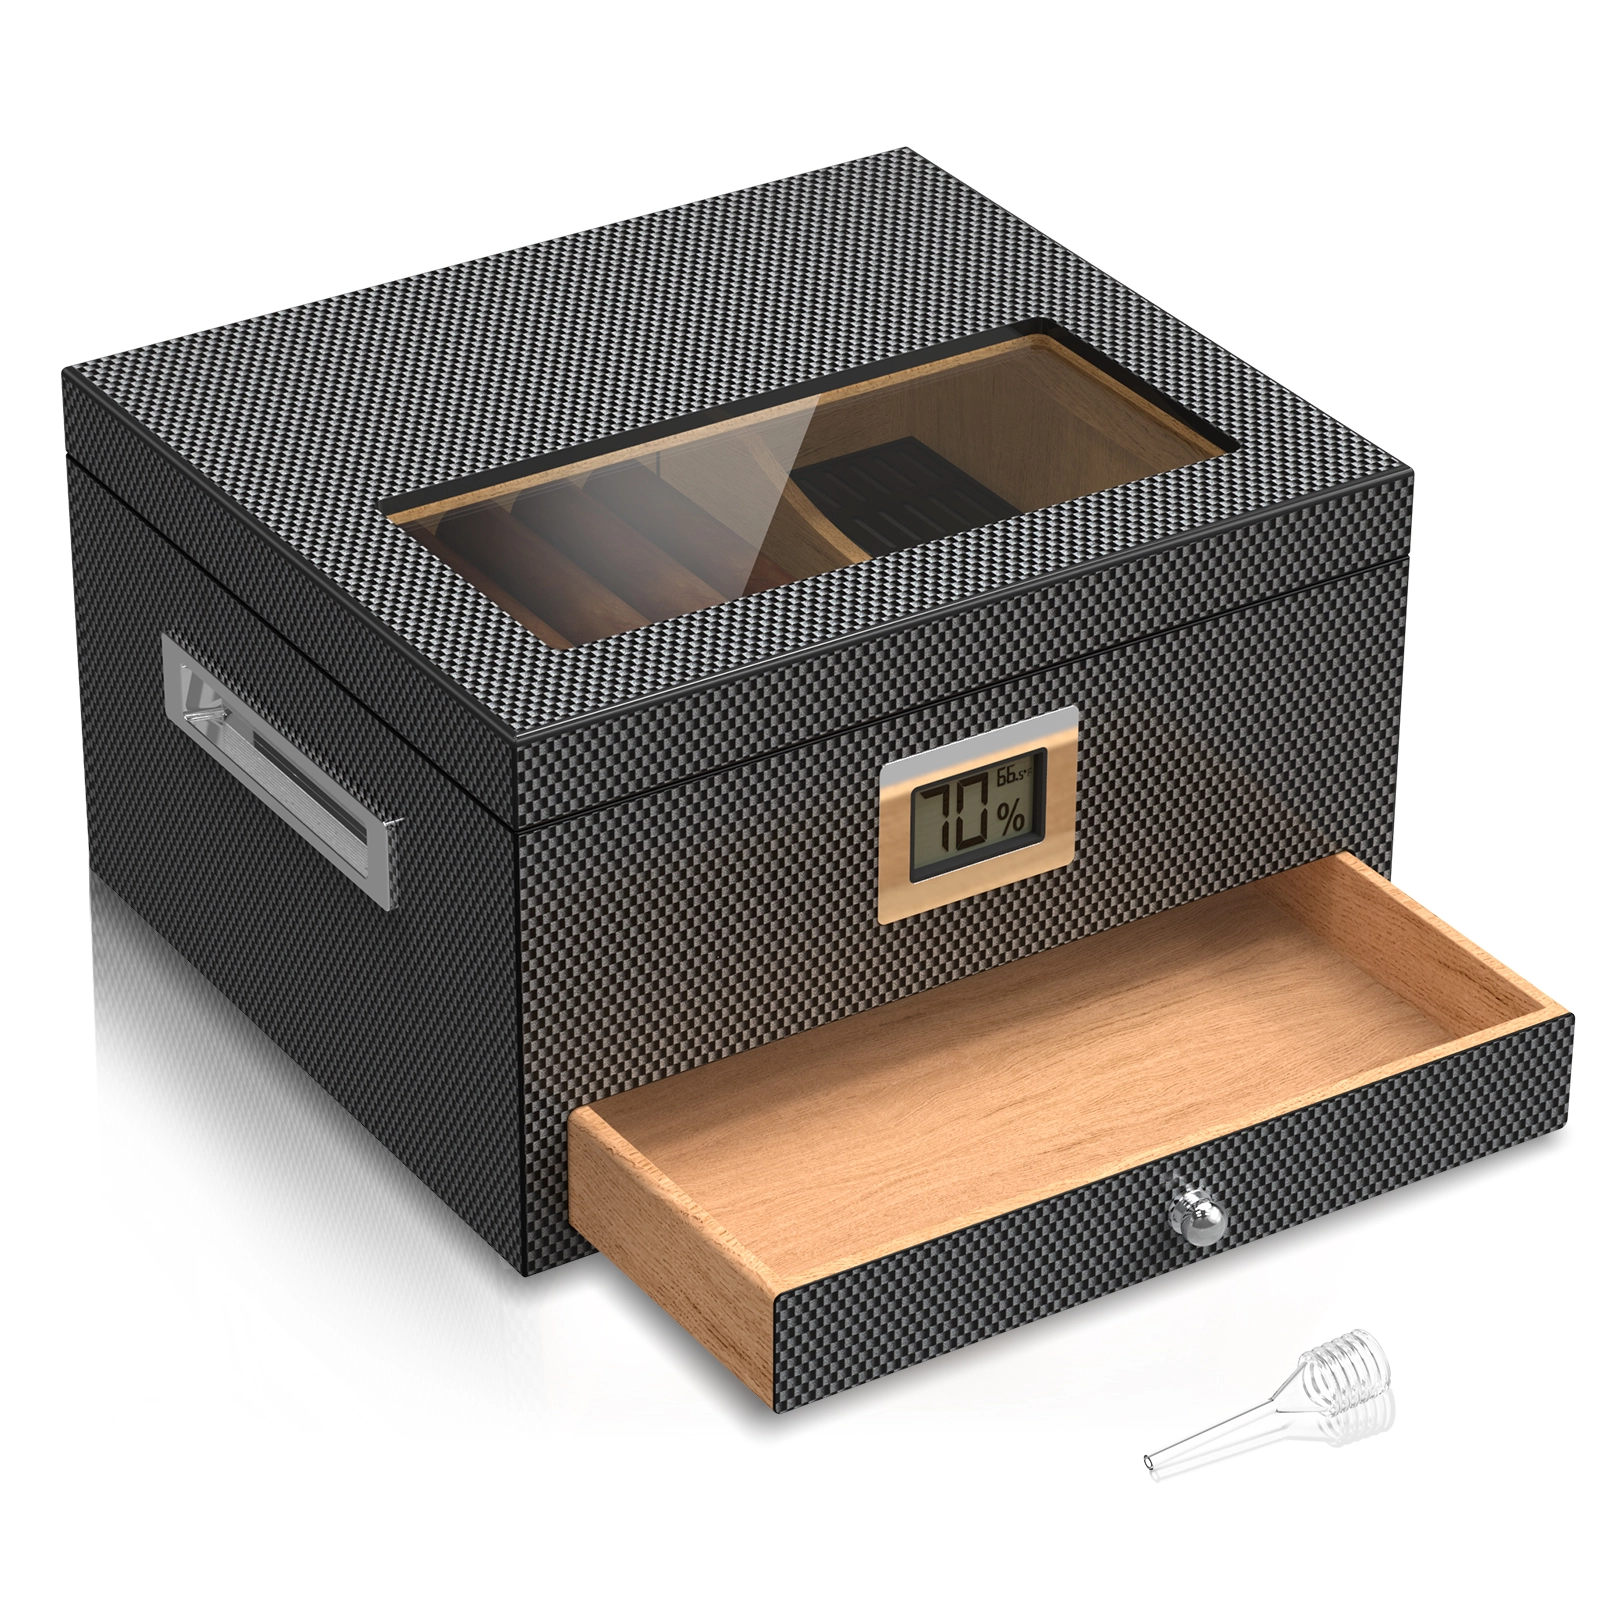 Mojgar Spanish Cedar Desktop Box